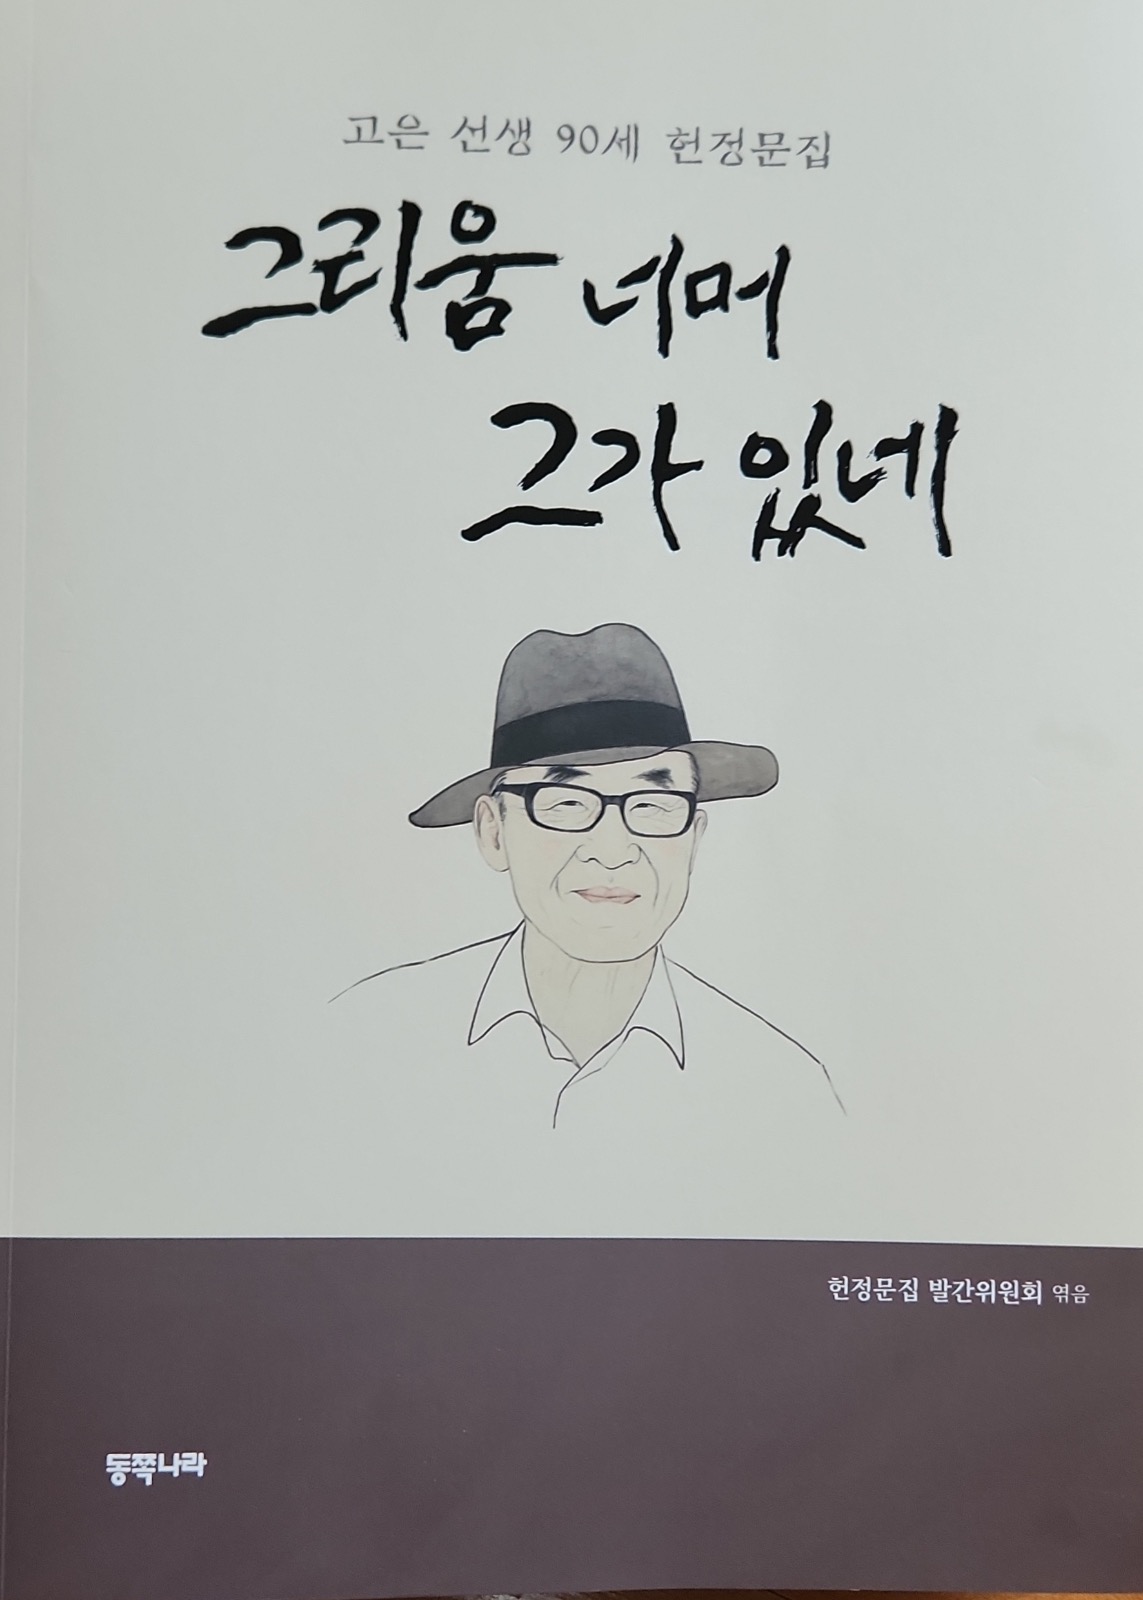 احتفال الشاعر الكوري الأشهر كو أون بعيد ميلاده التسعين